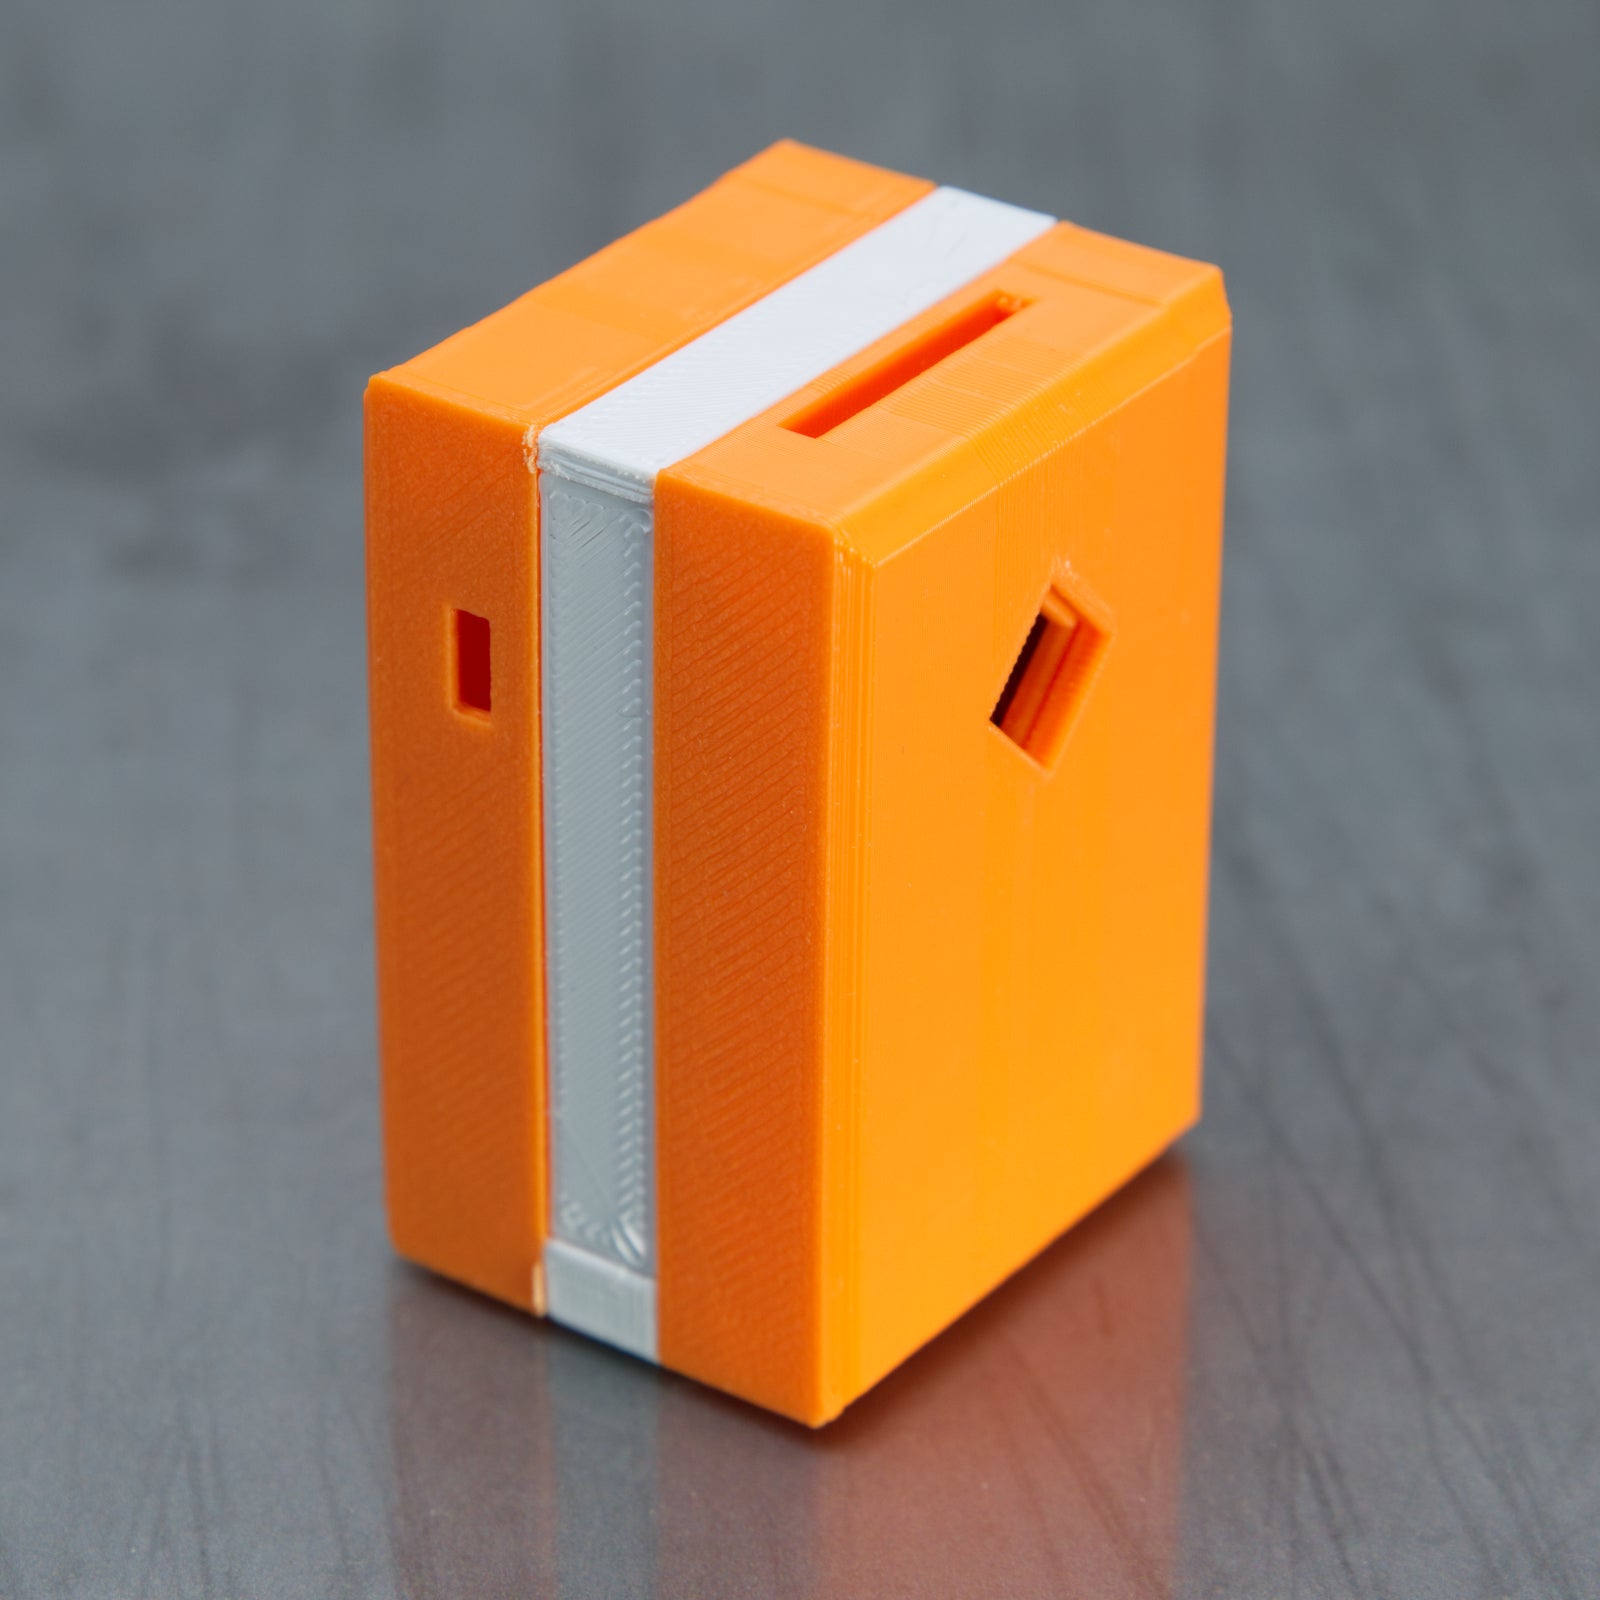 Pocket Change - Orange - Level 2 - PuzzledByPiker